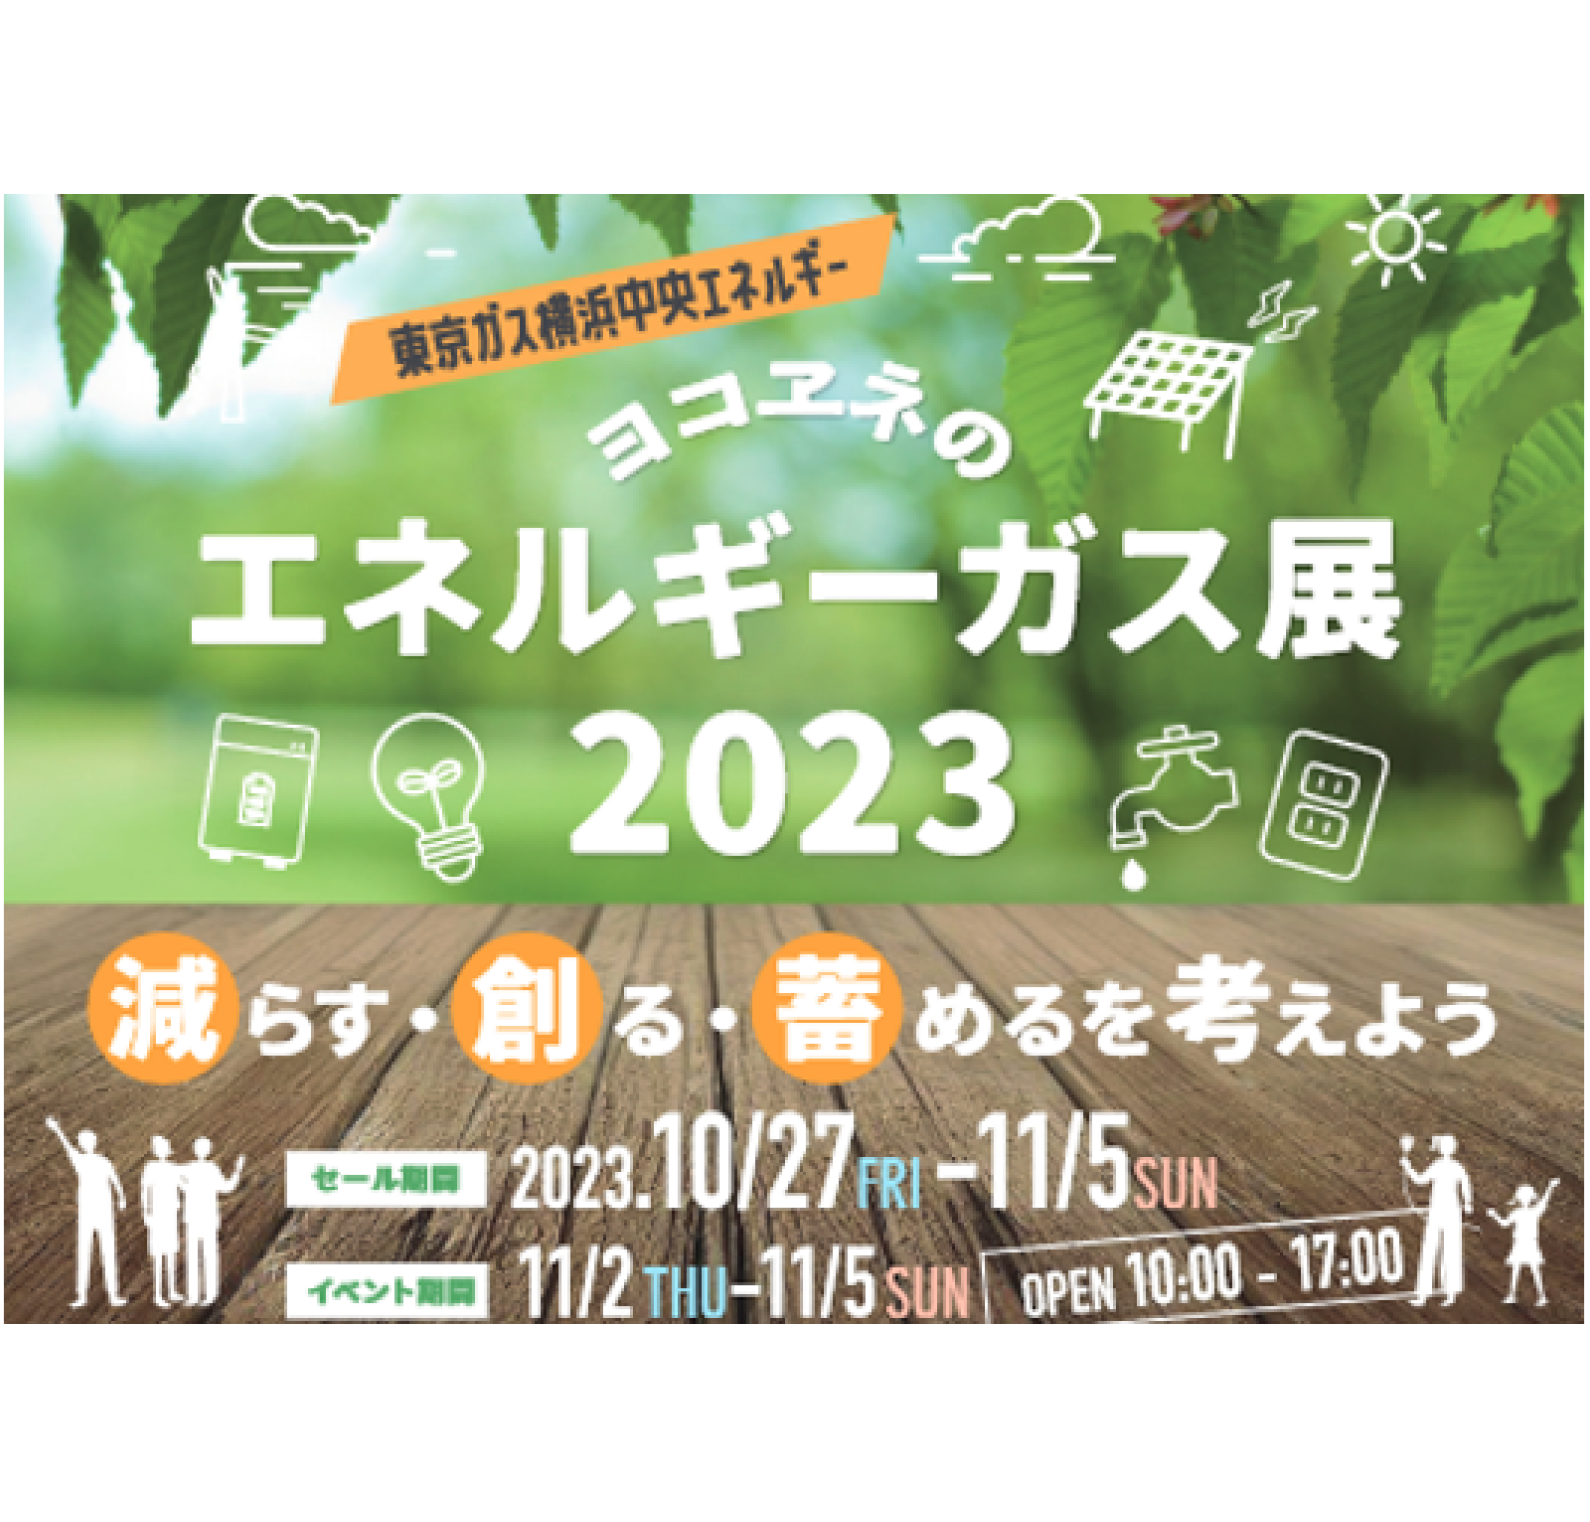 東京ガス横浜中央エネルギー様_キャンペーンバナー